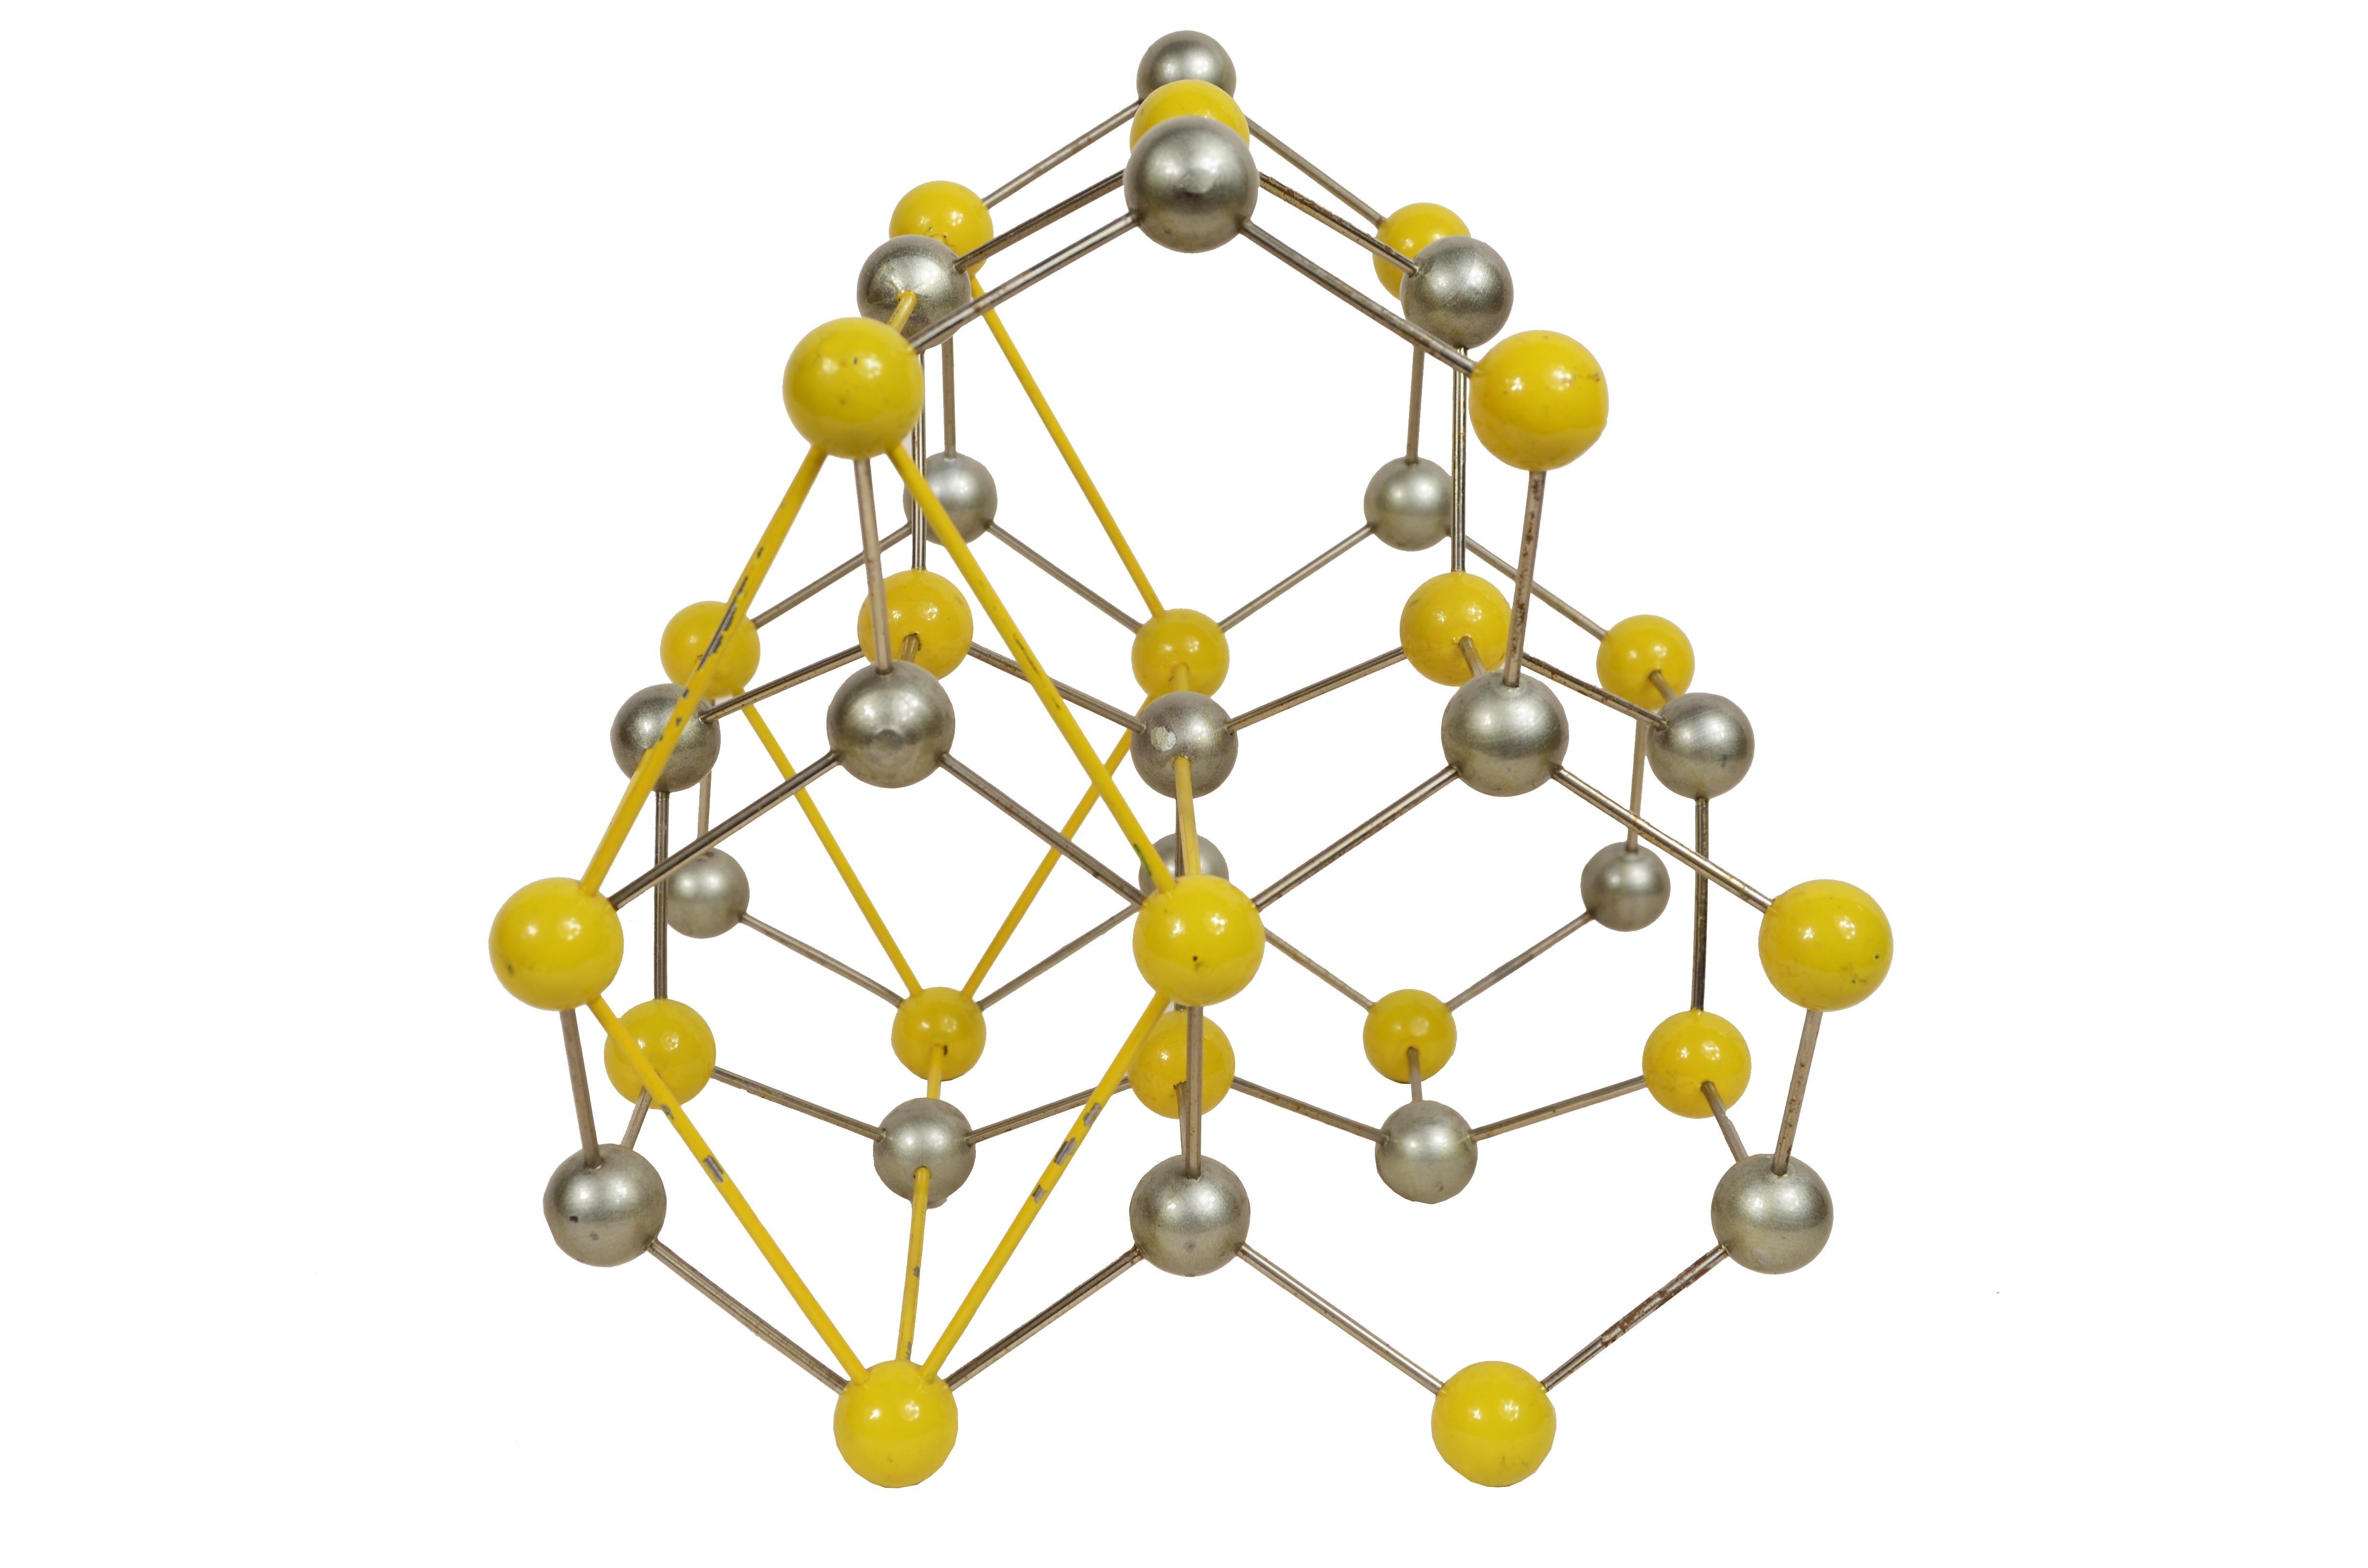 Atomare Struktur für den pädagogischen Gebrauch von Zink- und Eisensulfid, hergestellt aus Metall mit grau und gelb lackierten Bakelitkugeln. 
Es ist eine anorganische Verbindung, die natürlich in Wurtzit vorkommt, einem Mineral, das nach dem